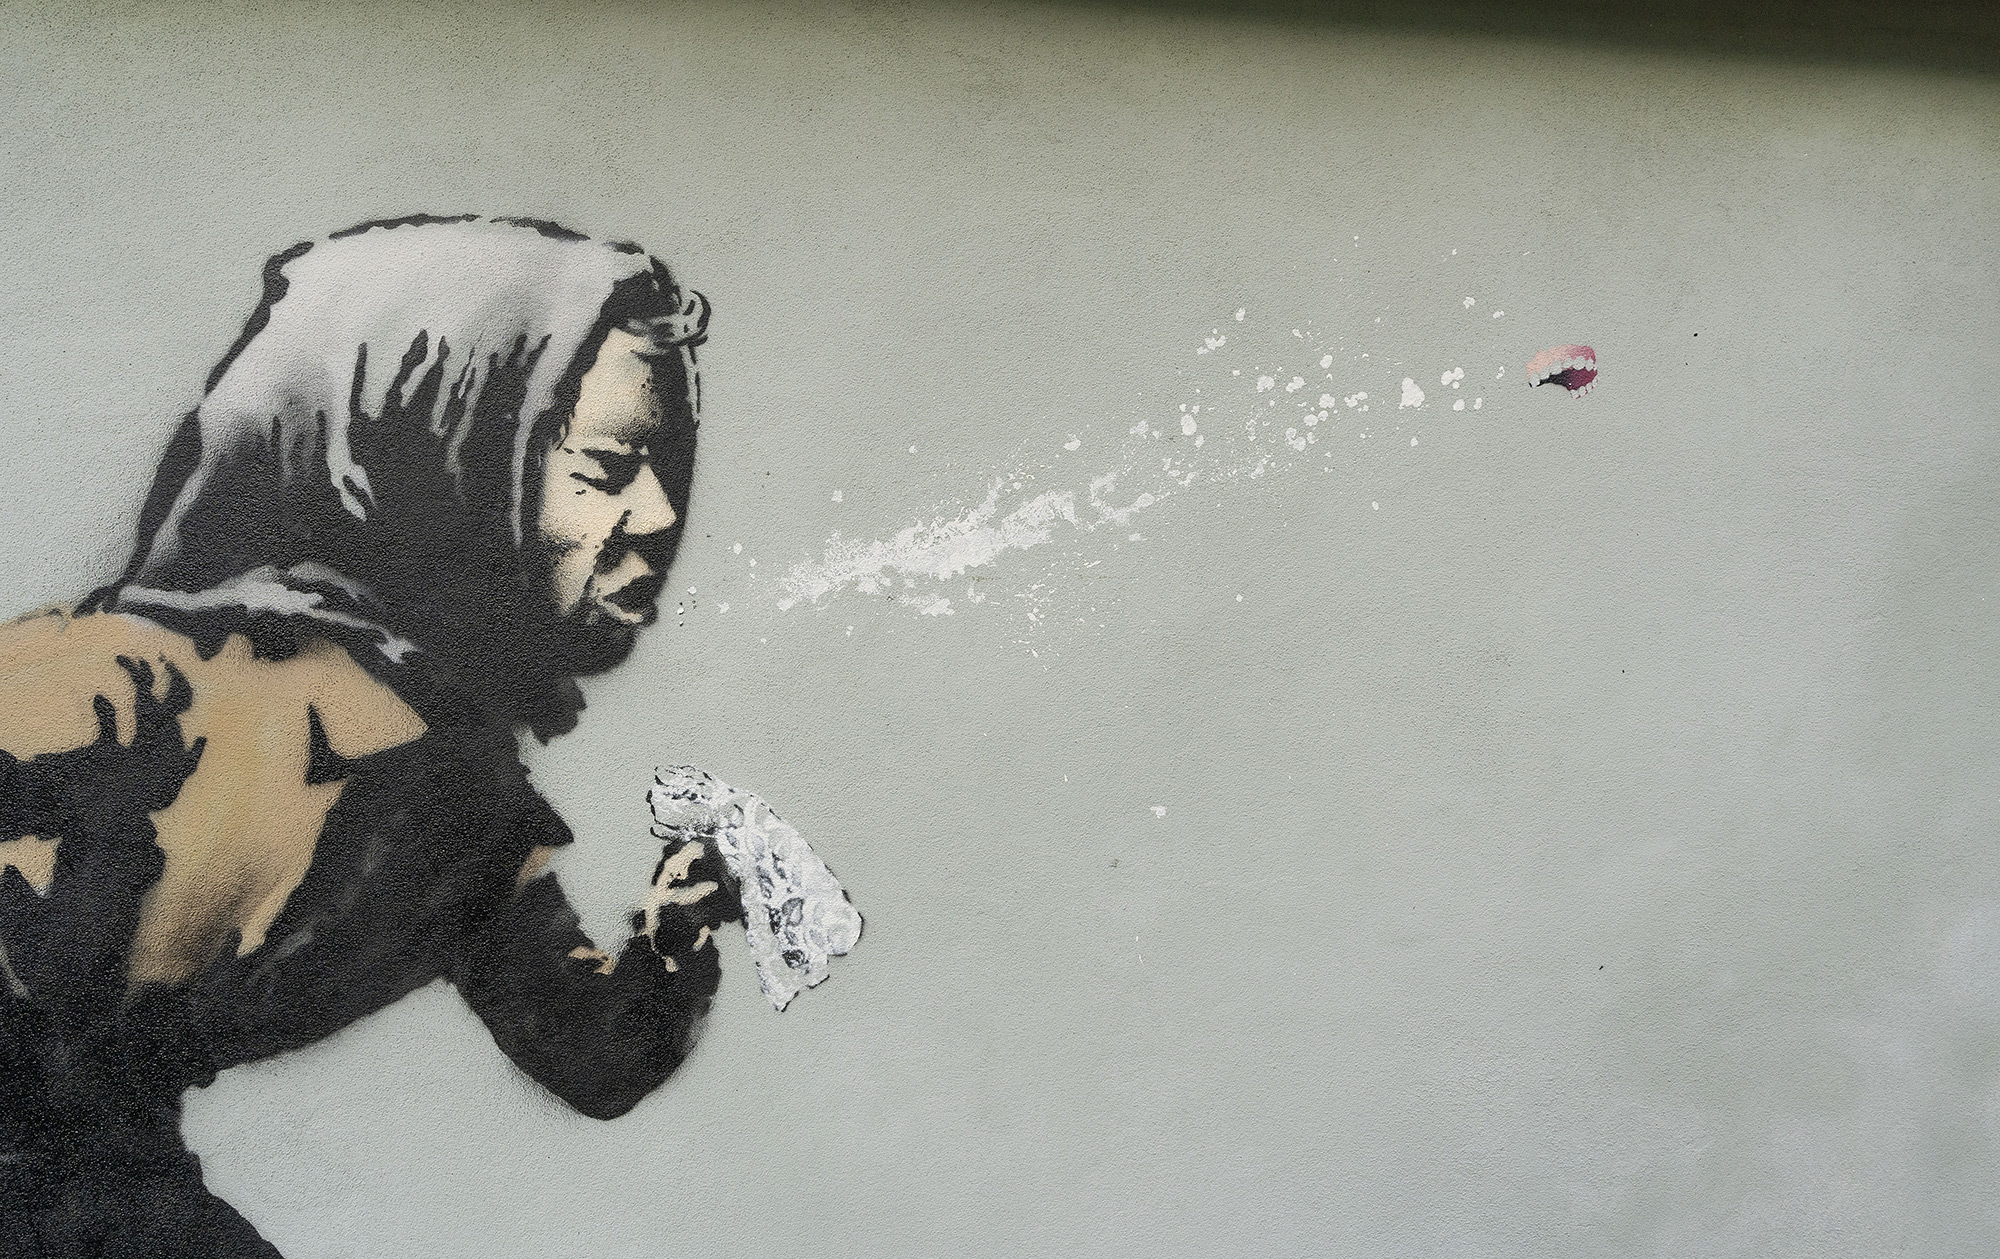 « Aachoo! » le nouveau clin d’œil à l’actualité que Banksy laisse sur les murs de Bristol